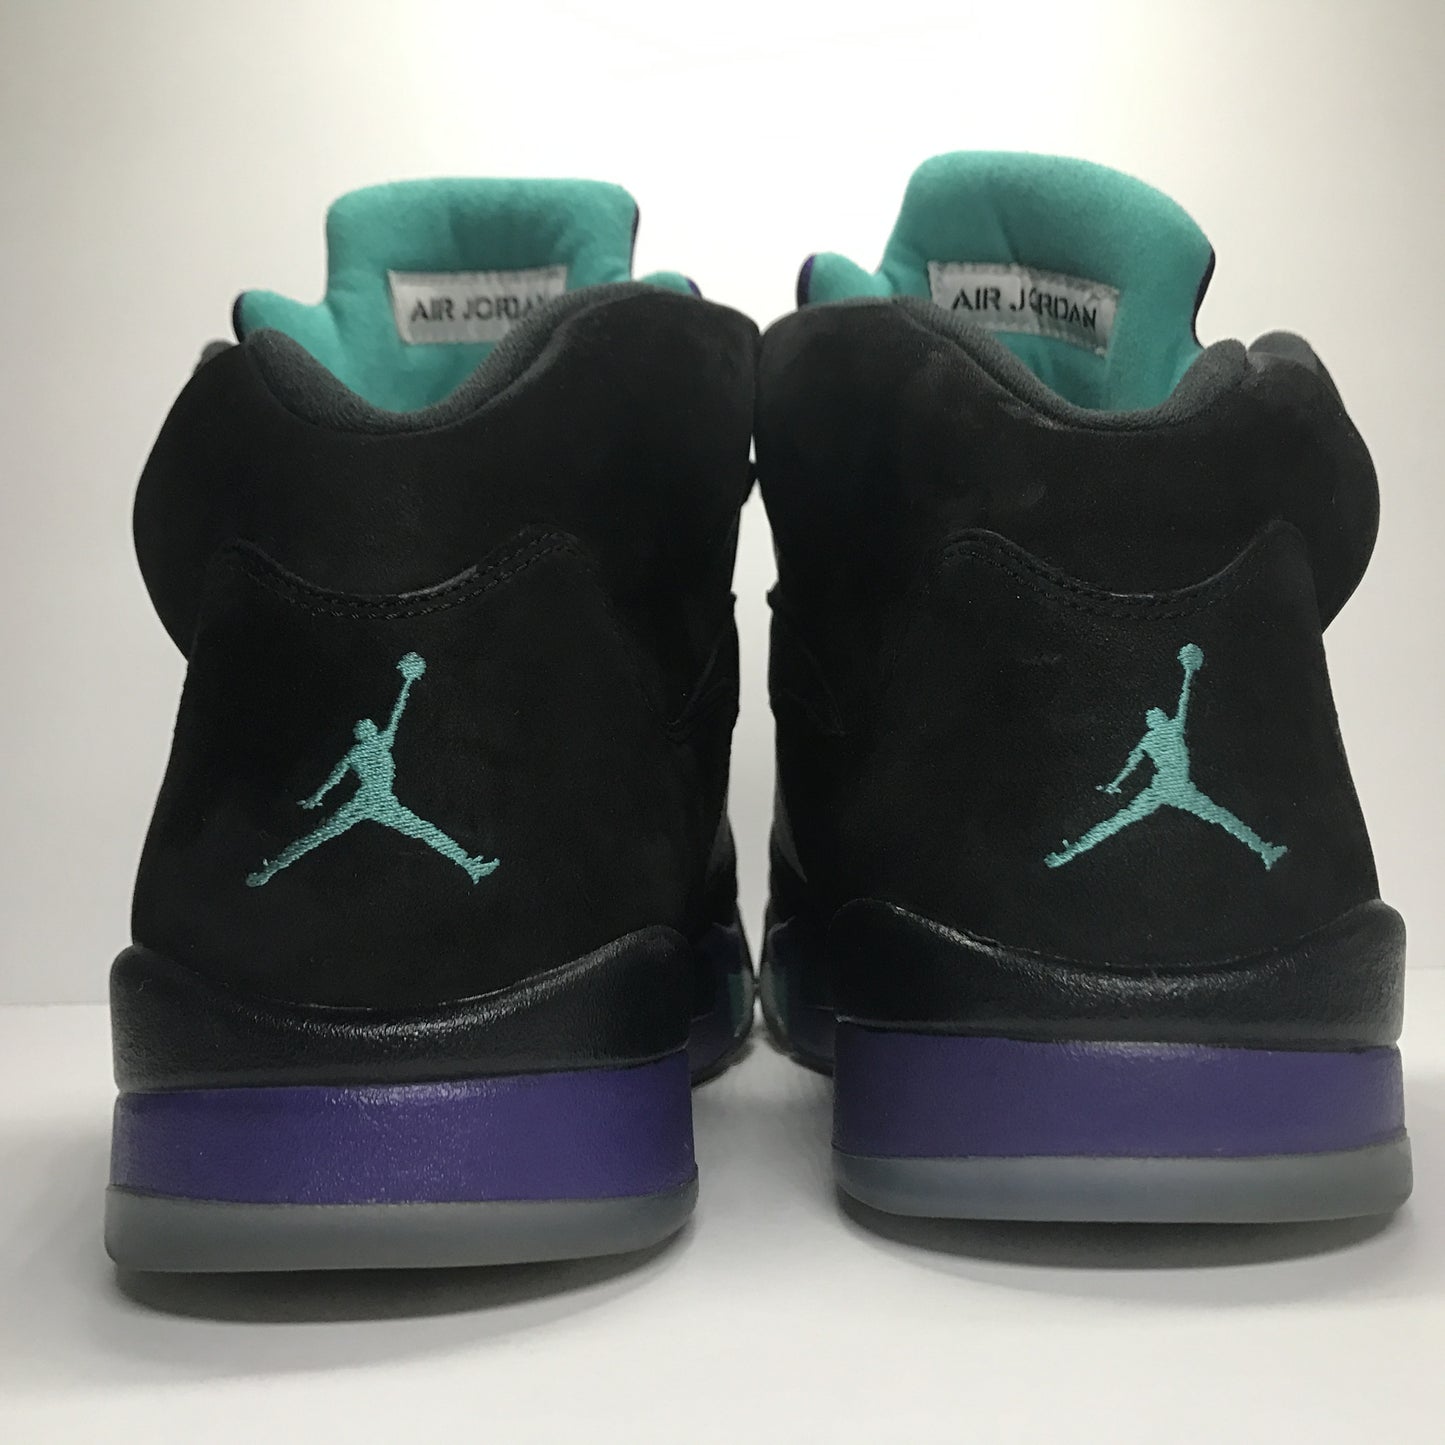 Nike Air Jordan 5 V Retro Black Grape Size 14